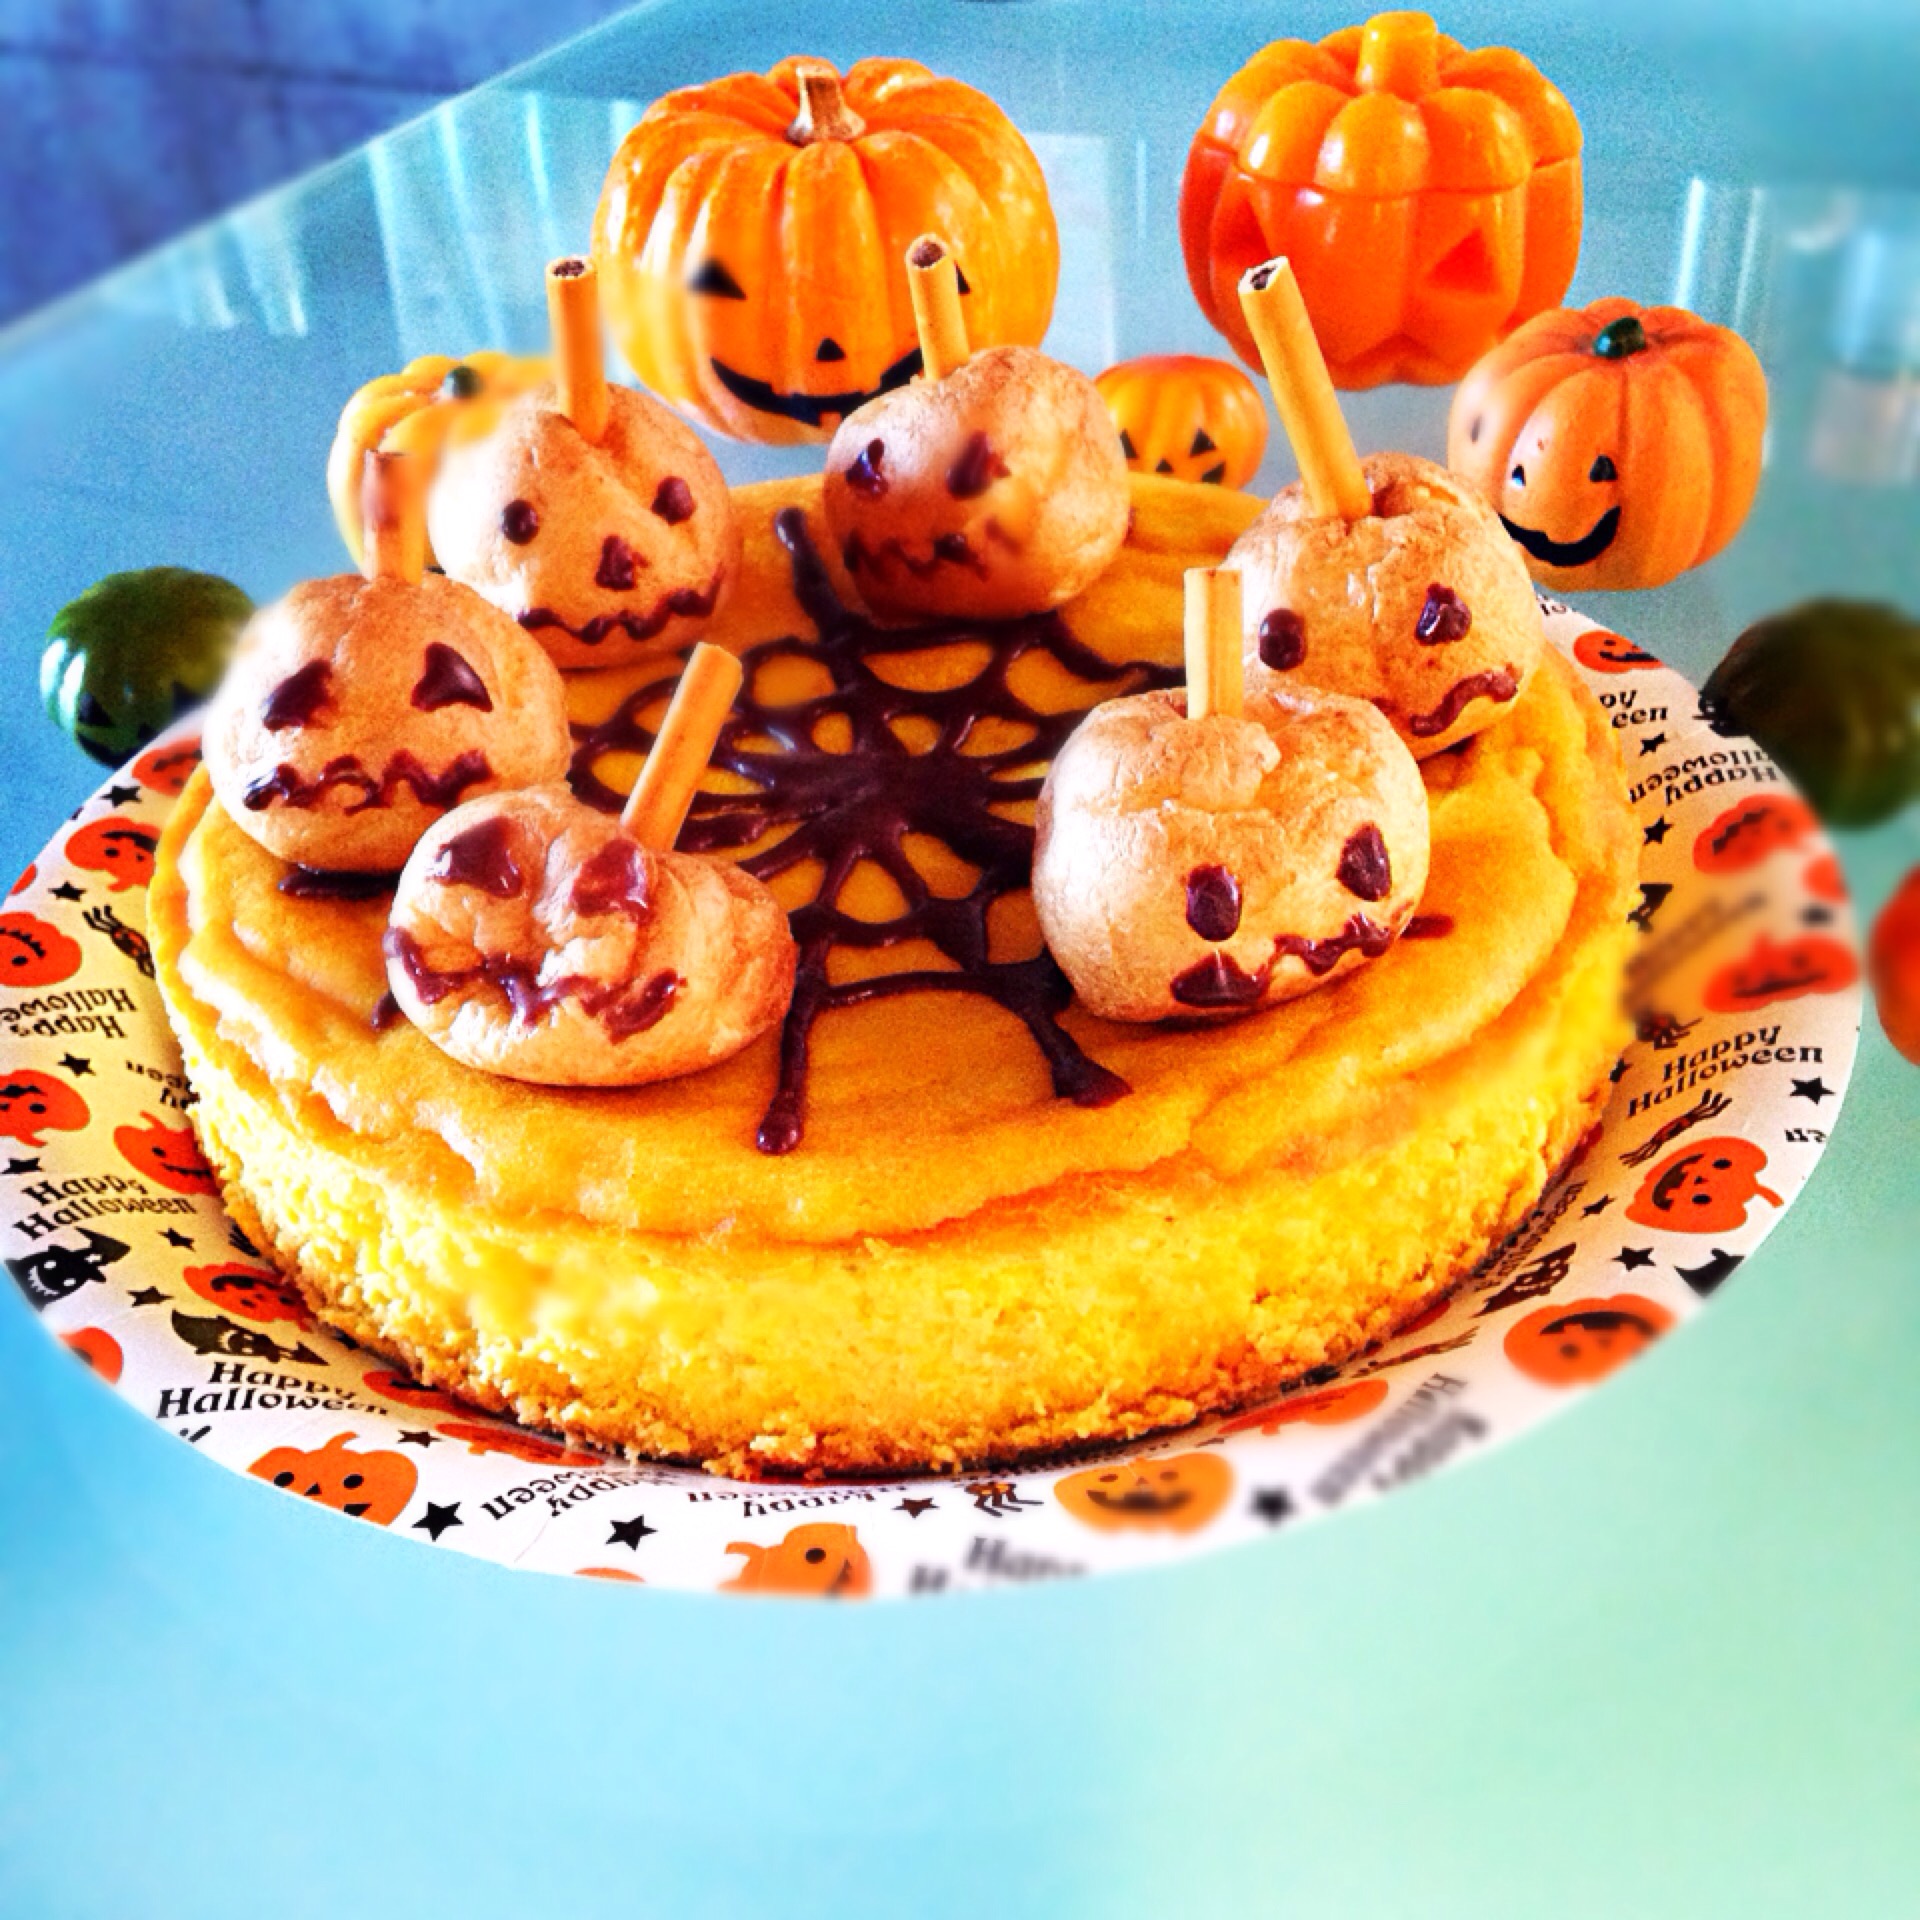 かぼちゃのチーズケーキ